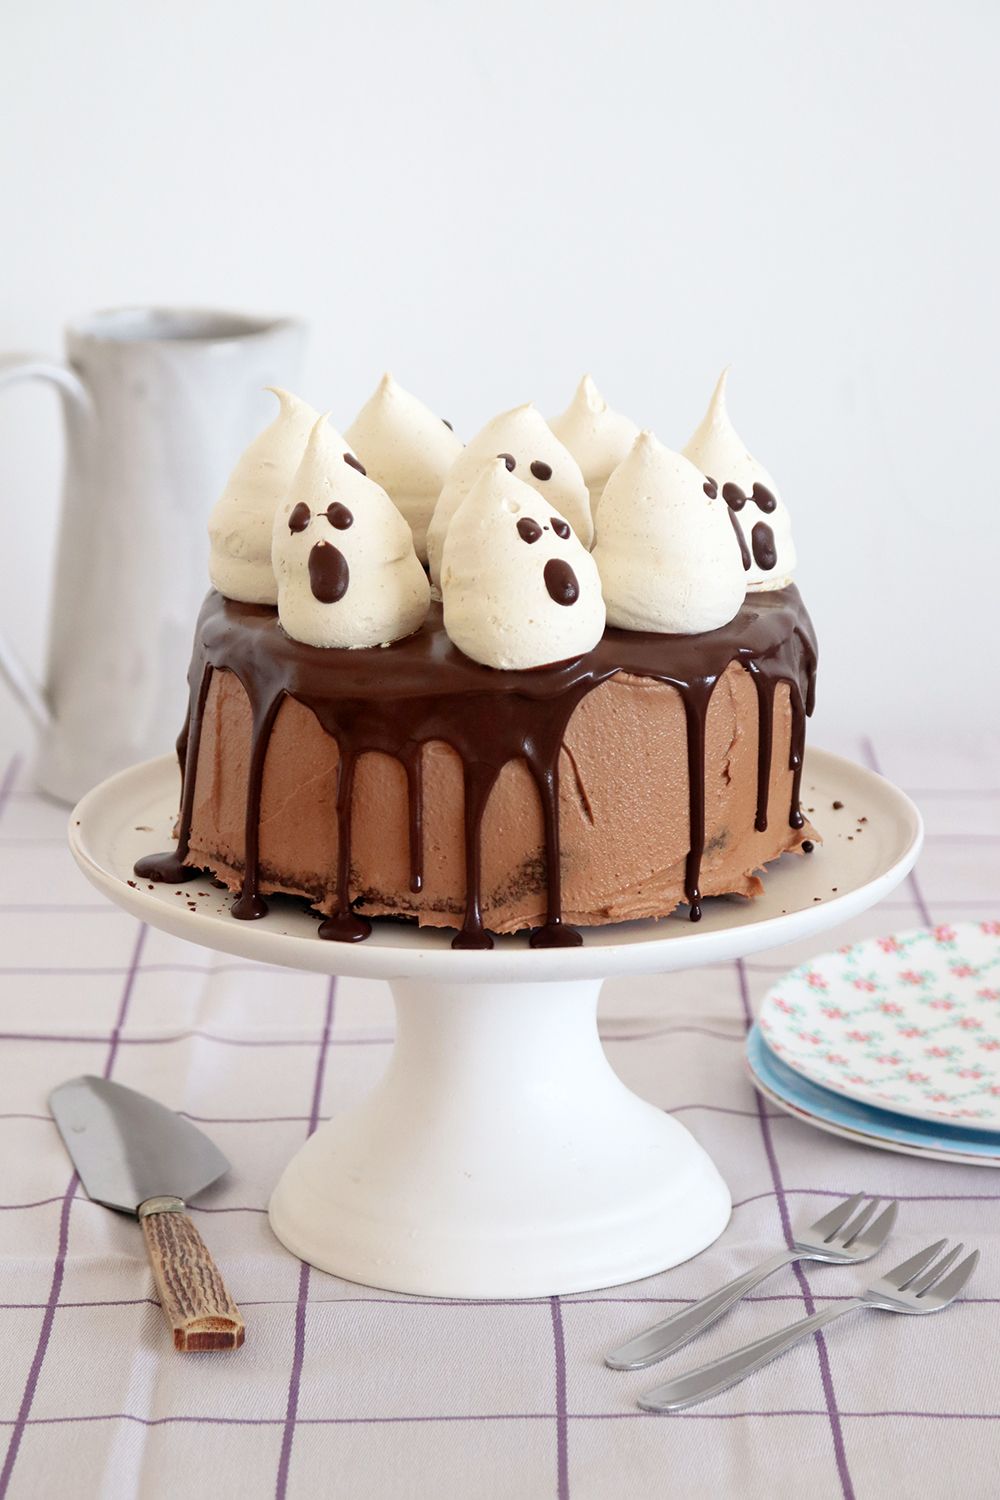 עוגת שוקולד גבוהה עם קישוט מרנג בצורת רוחות רפאים | צילום: נטלי לוין